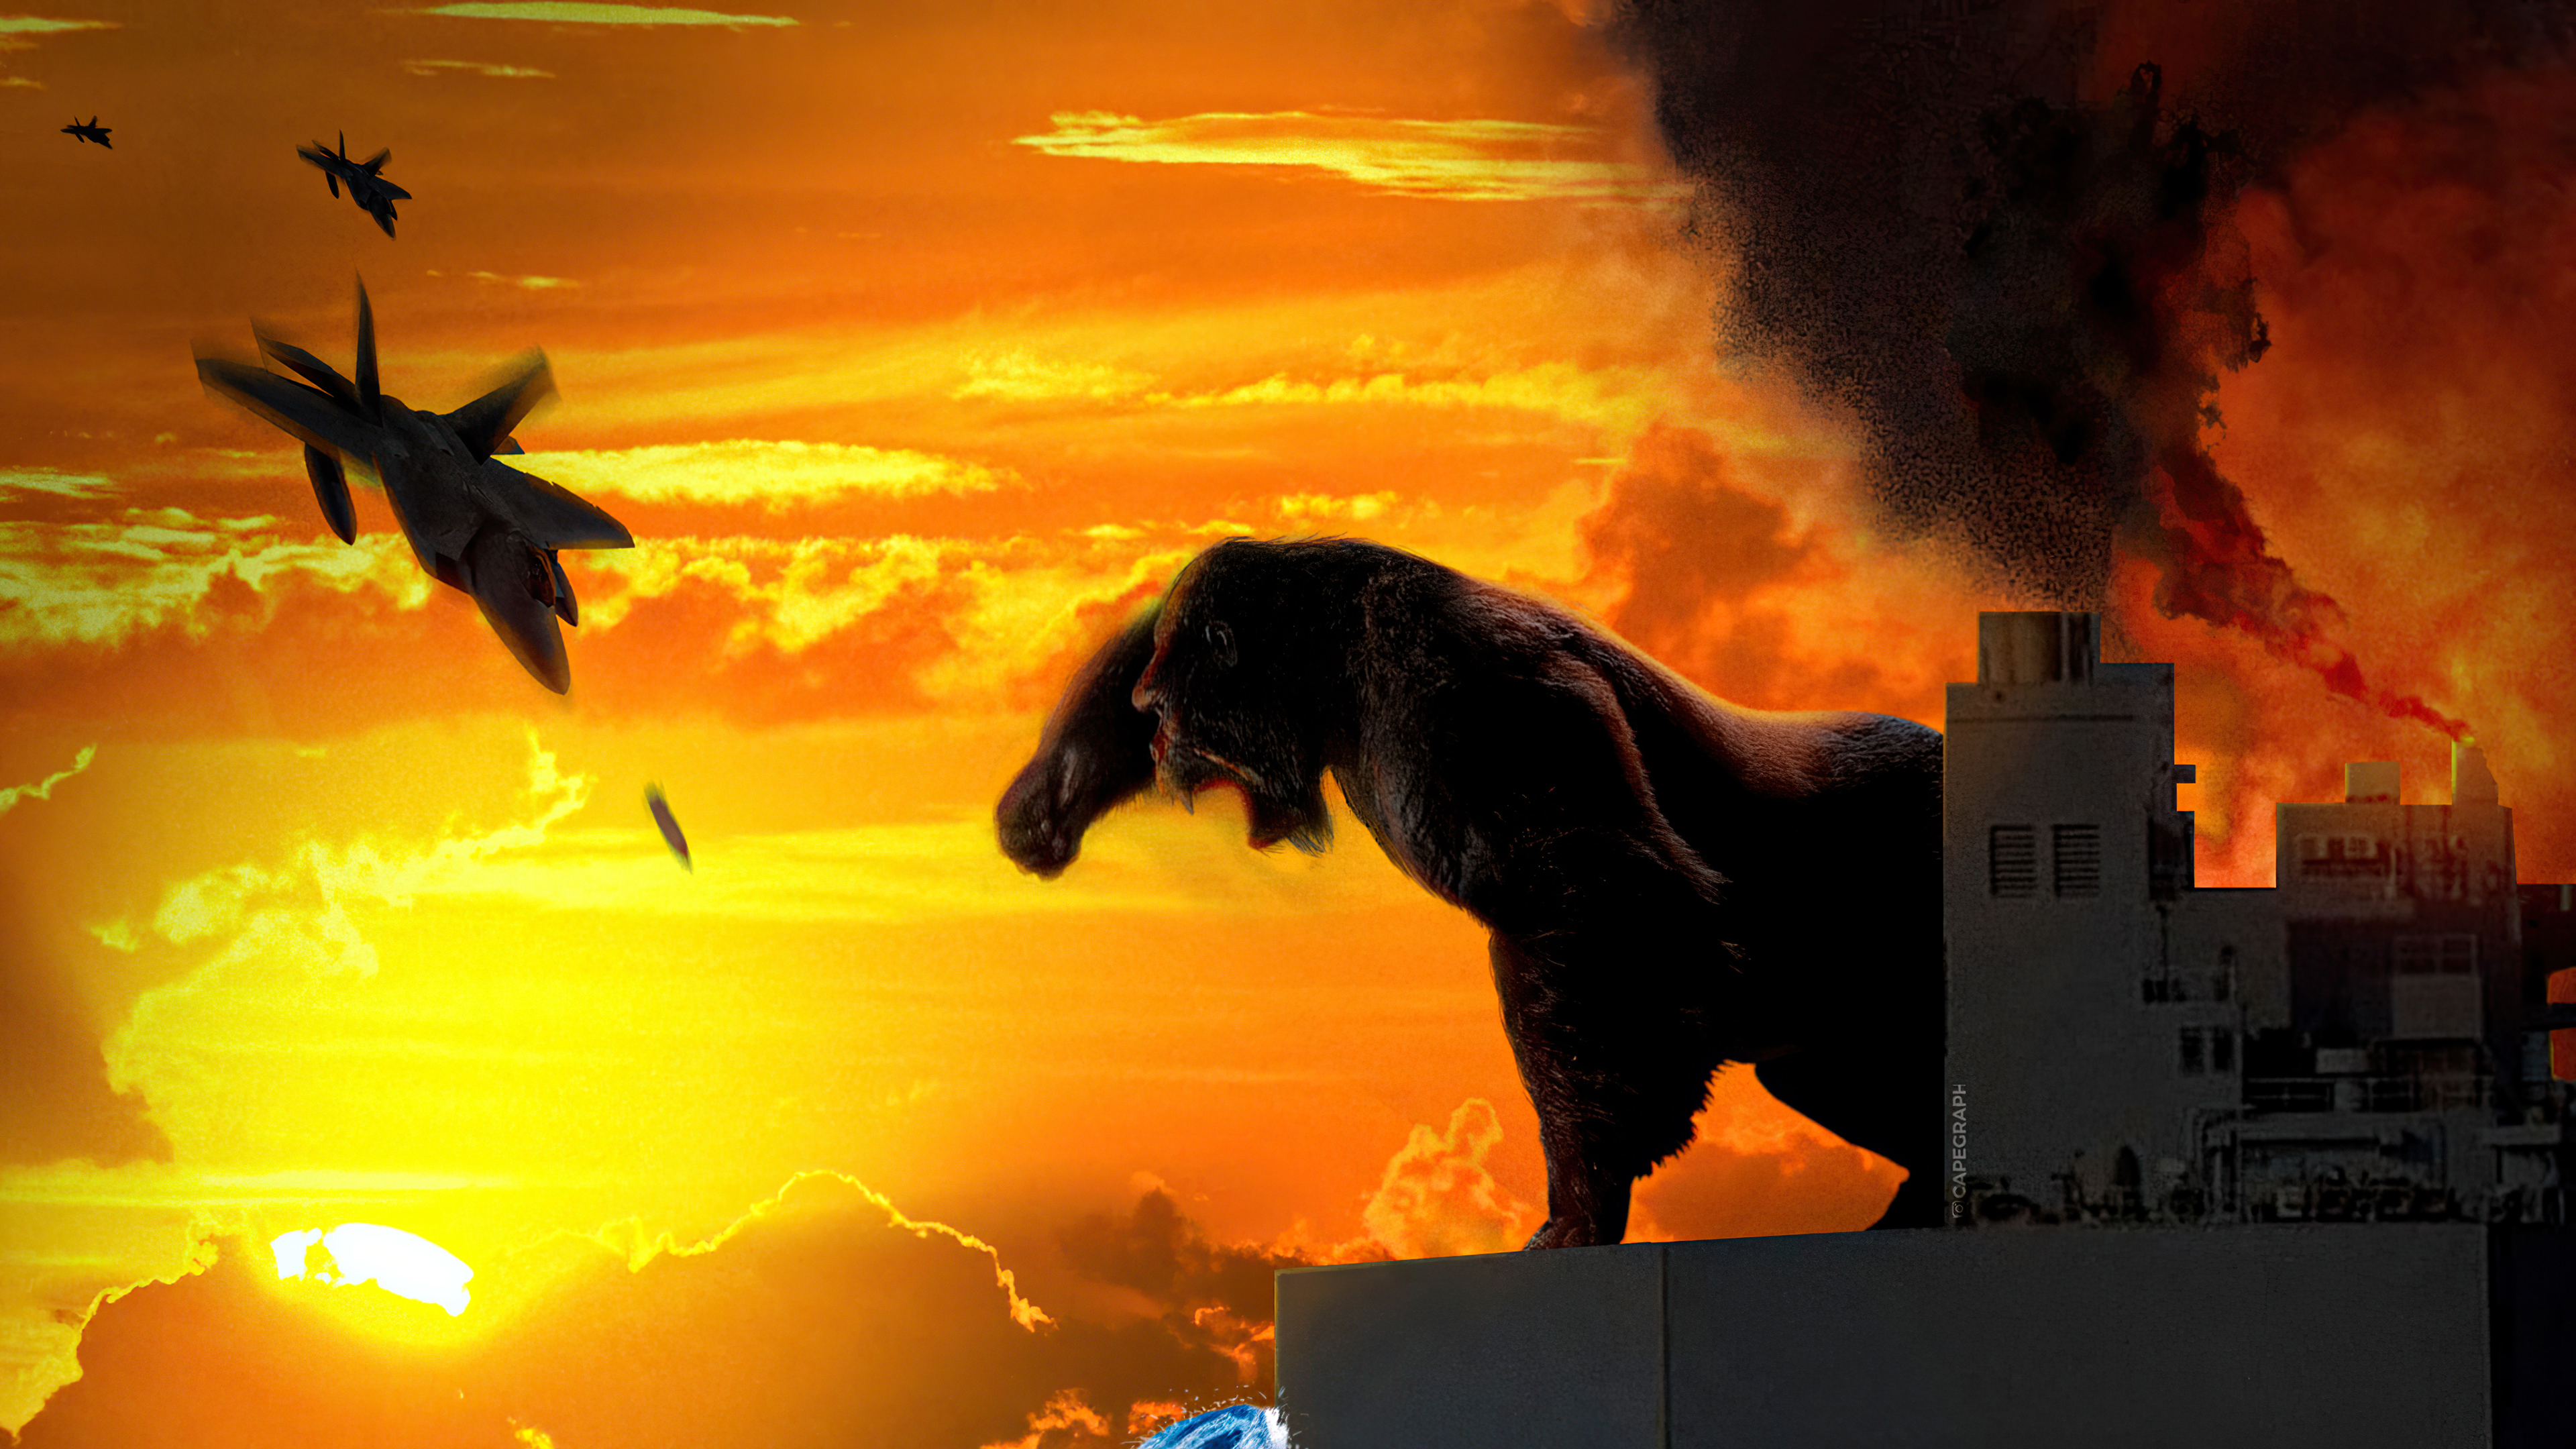 Godzilla Vs Kong 2021 Fanart Wallpapers